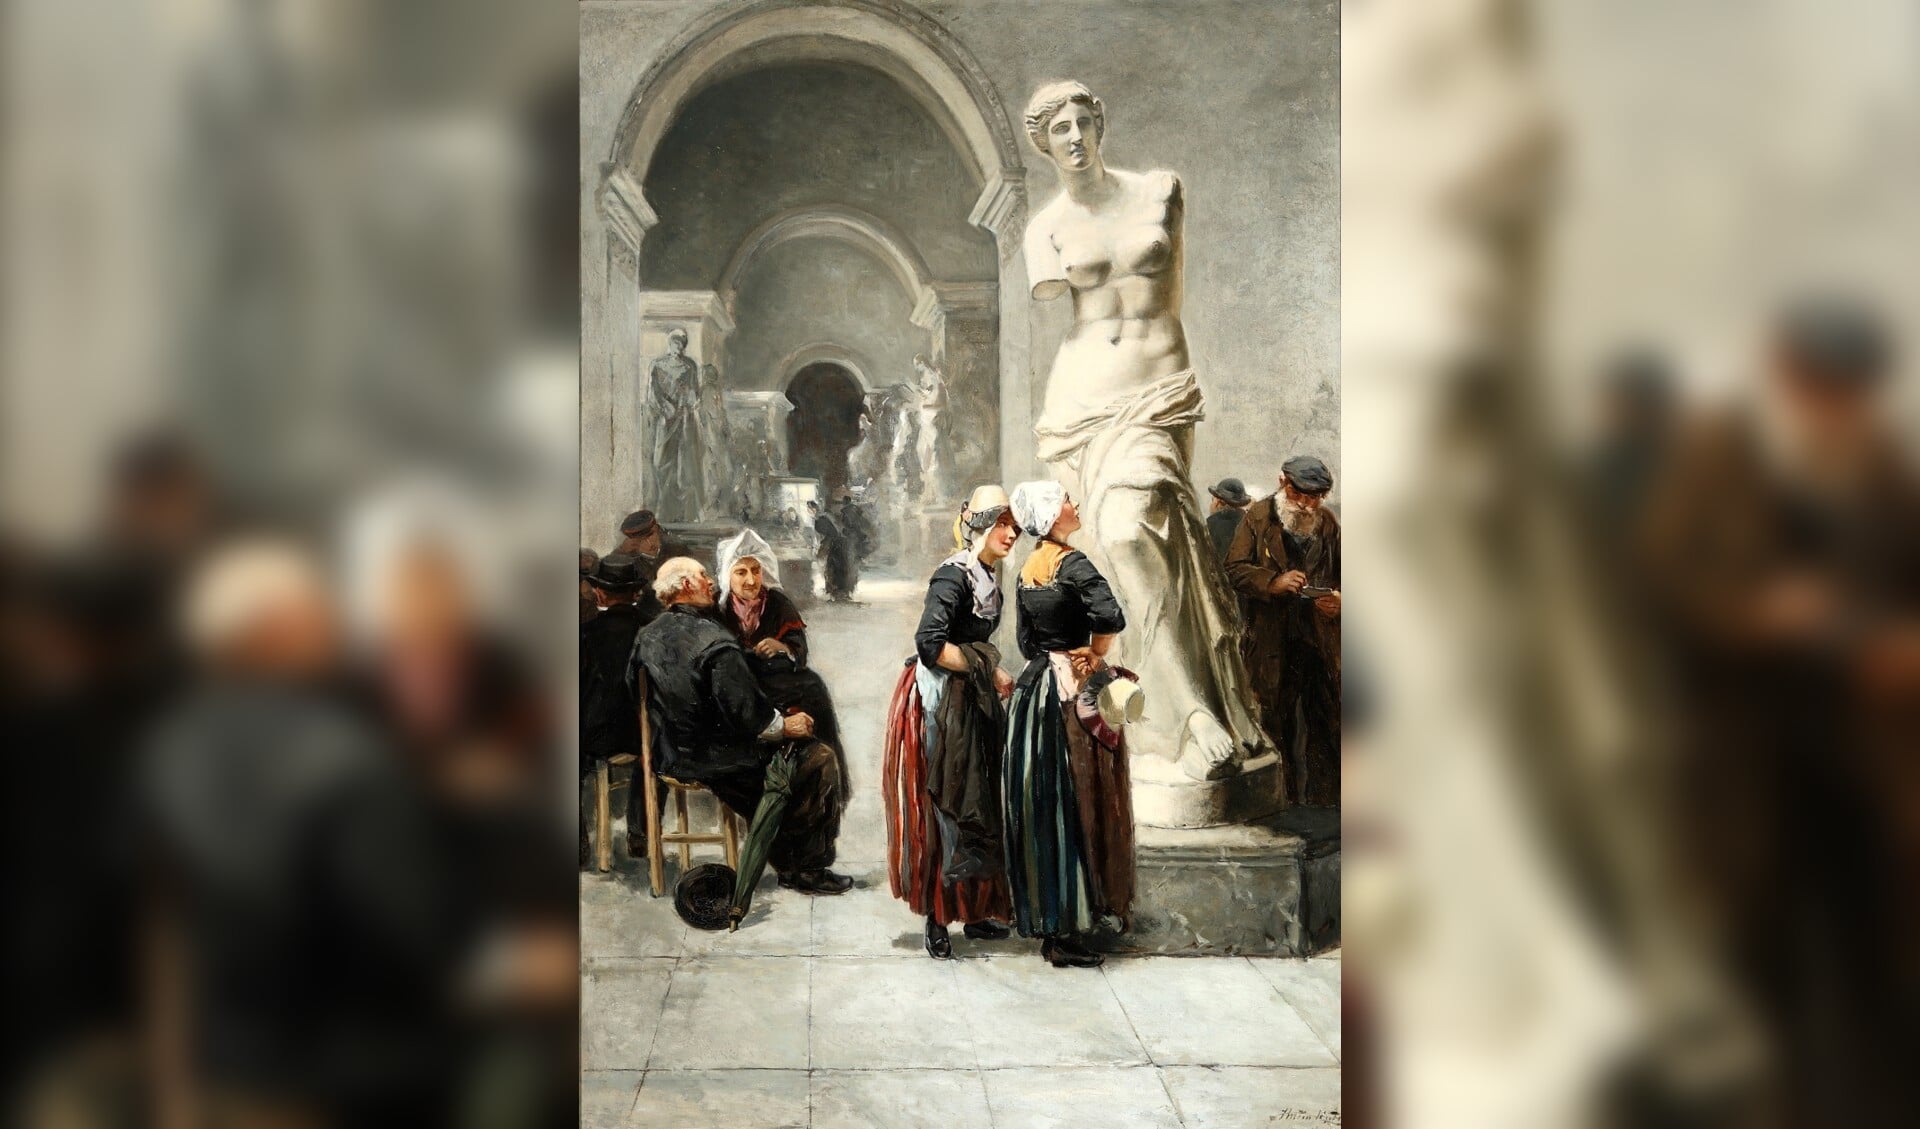 Het schilderij ‘Een bezoek aan het Louvre, Parijs’ van Johannes Marius ten Kate was niet eerder in het publieke domein te zien. (Foto: aangeleverd)